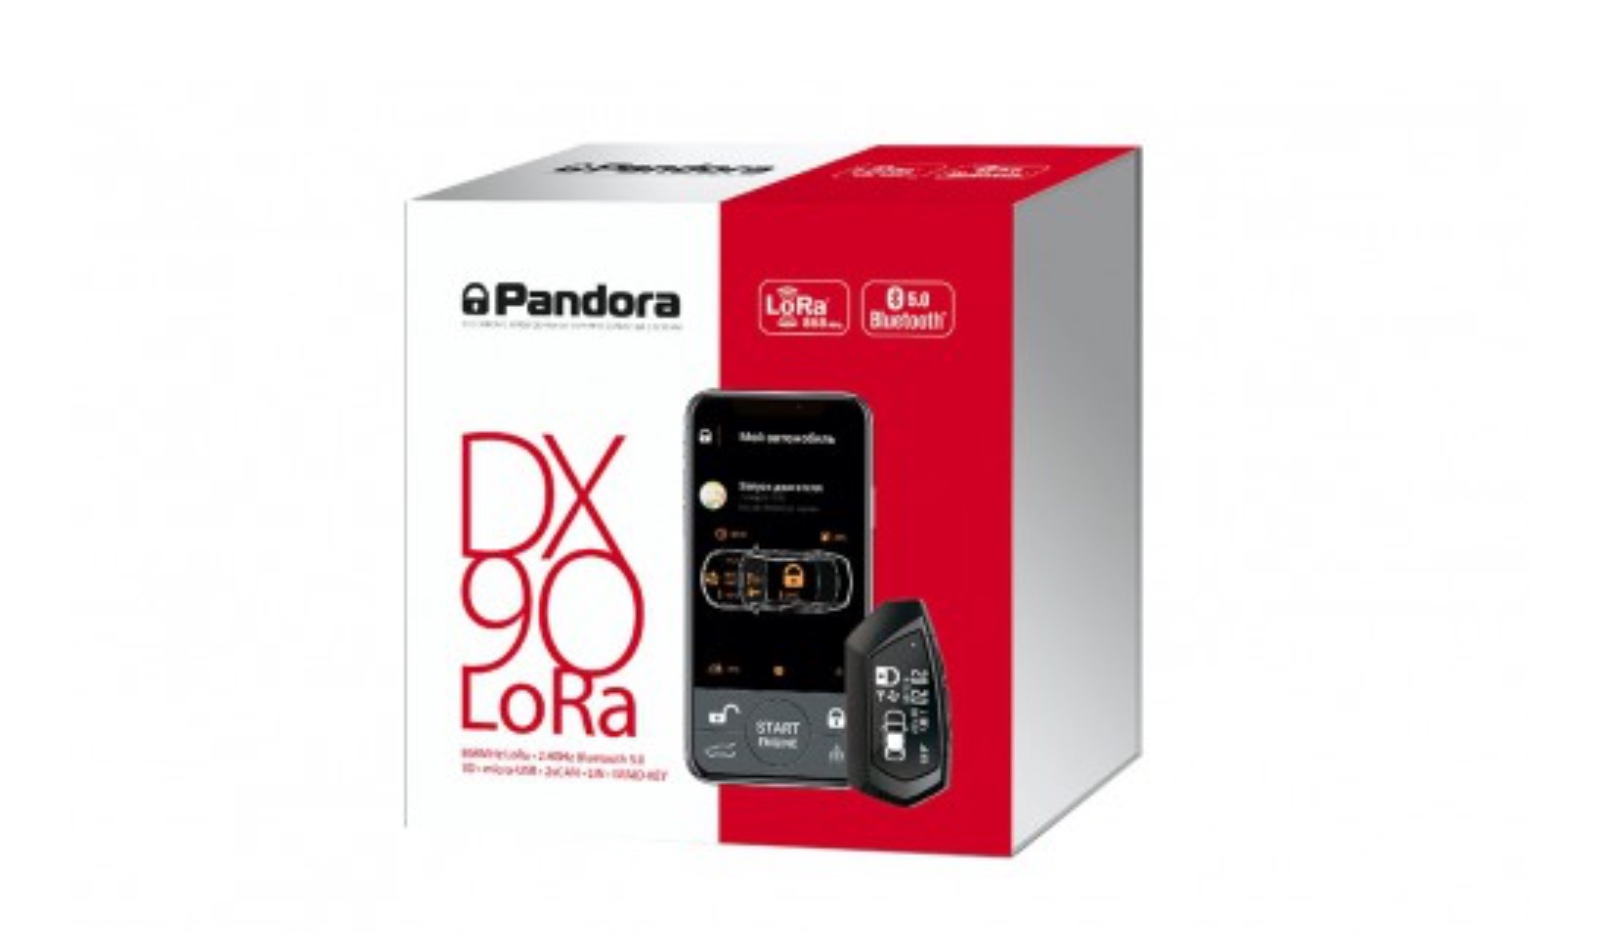 Pandora DX-90 LoRa Пандора (Pandora)